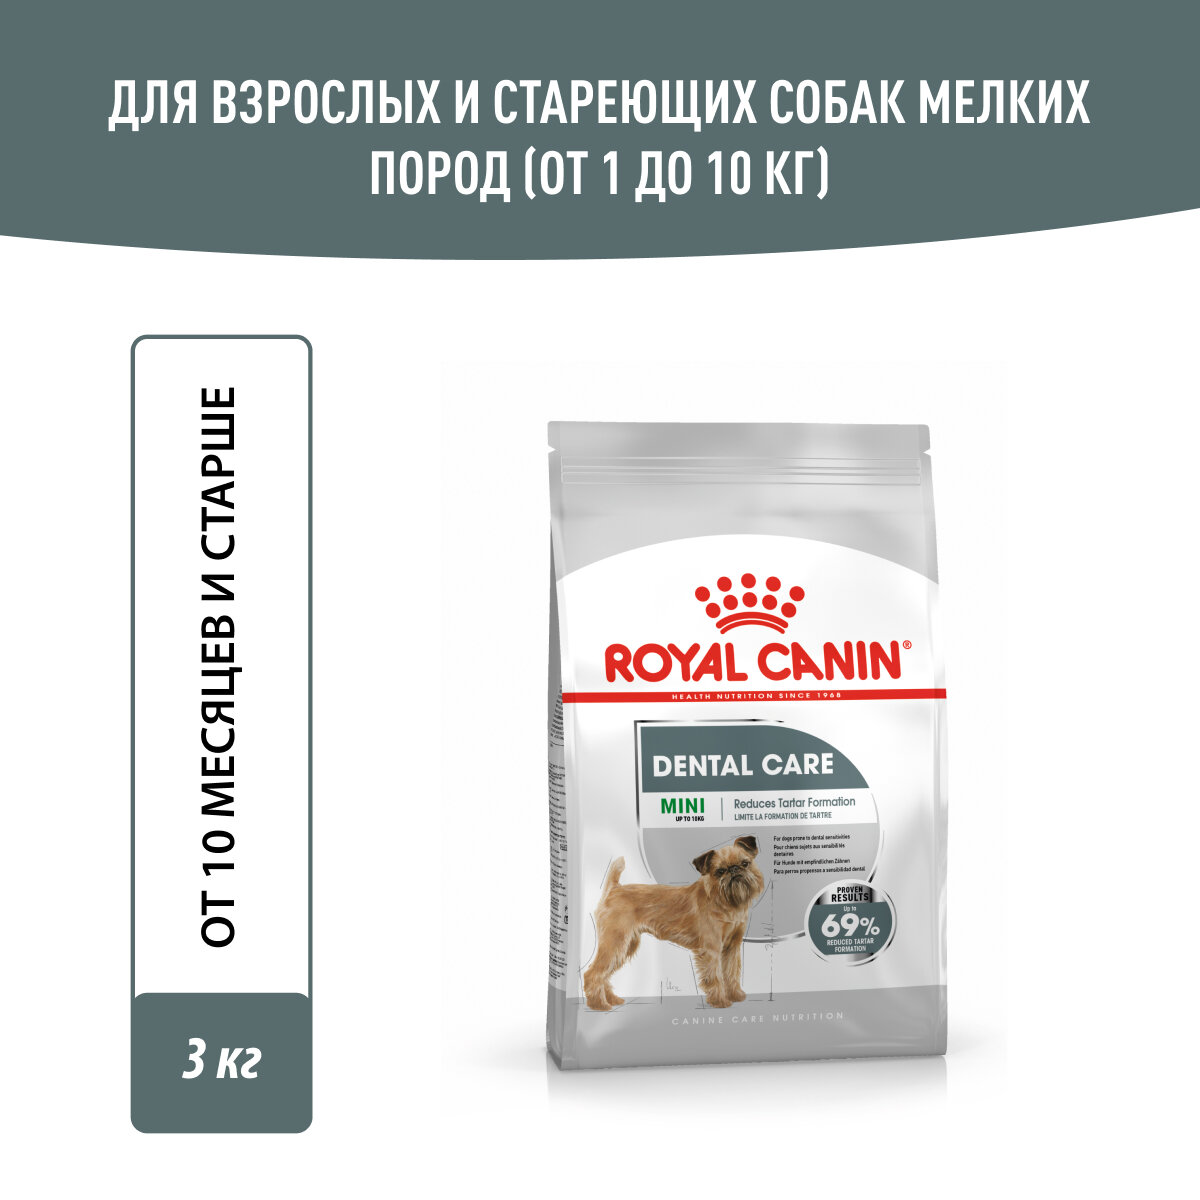 Корм Royal Canin для собак малых пород с повышенной чувствительностью зубов, 3 кг